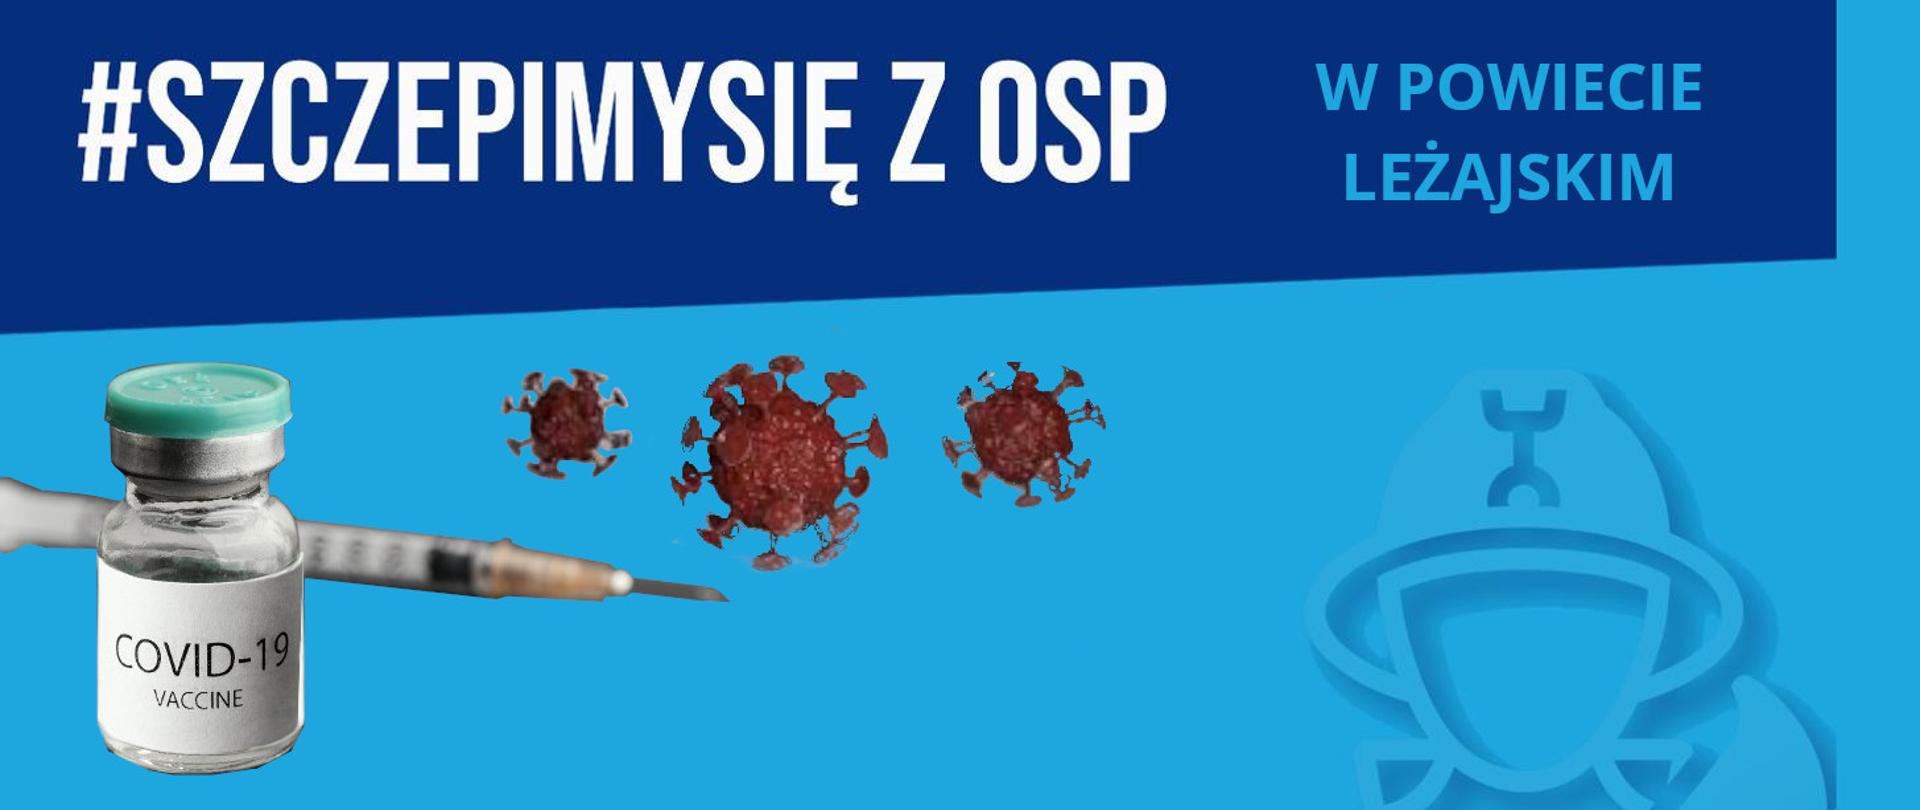 Na banerze widzimy napis #SzczepimySię z OSP w powiecie leżajskim. Na banerze znajdują się również grafika szczepionki i szczykafki z igłą oraz wizualizacja wirusa w powiększeniu.